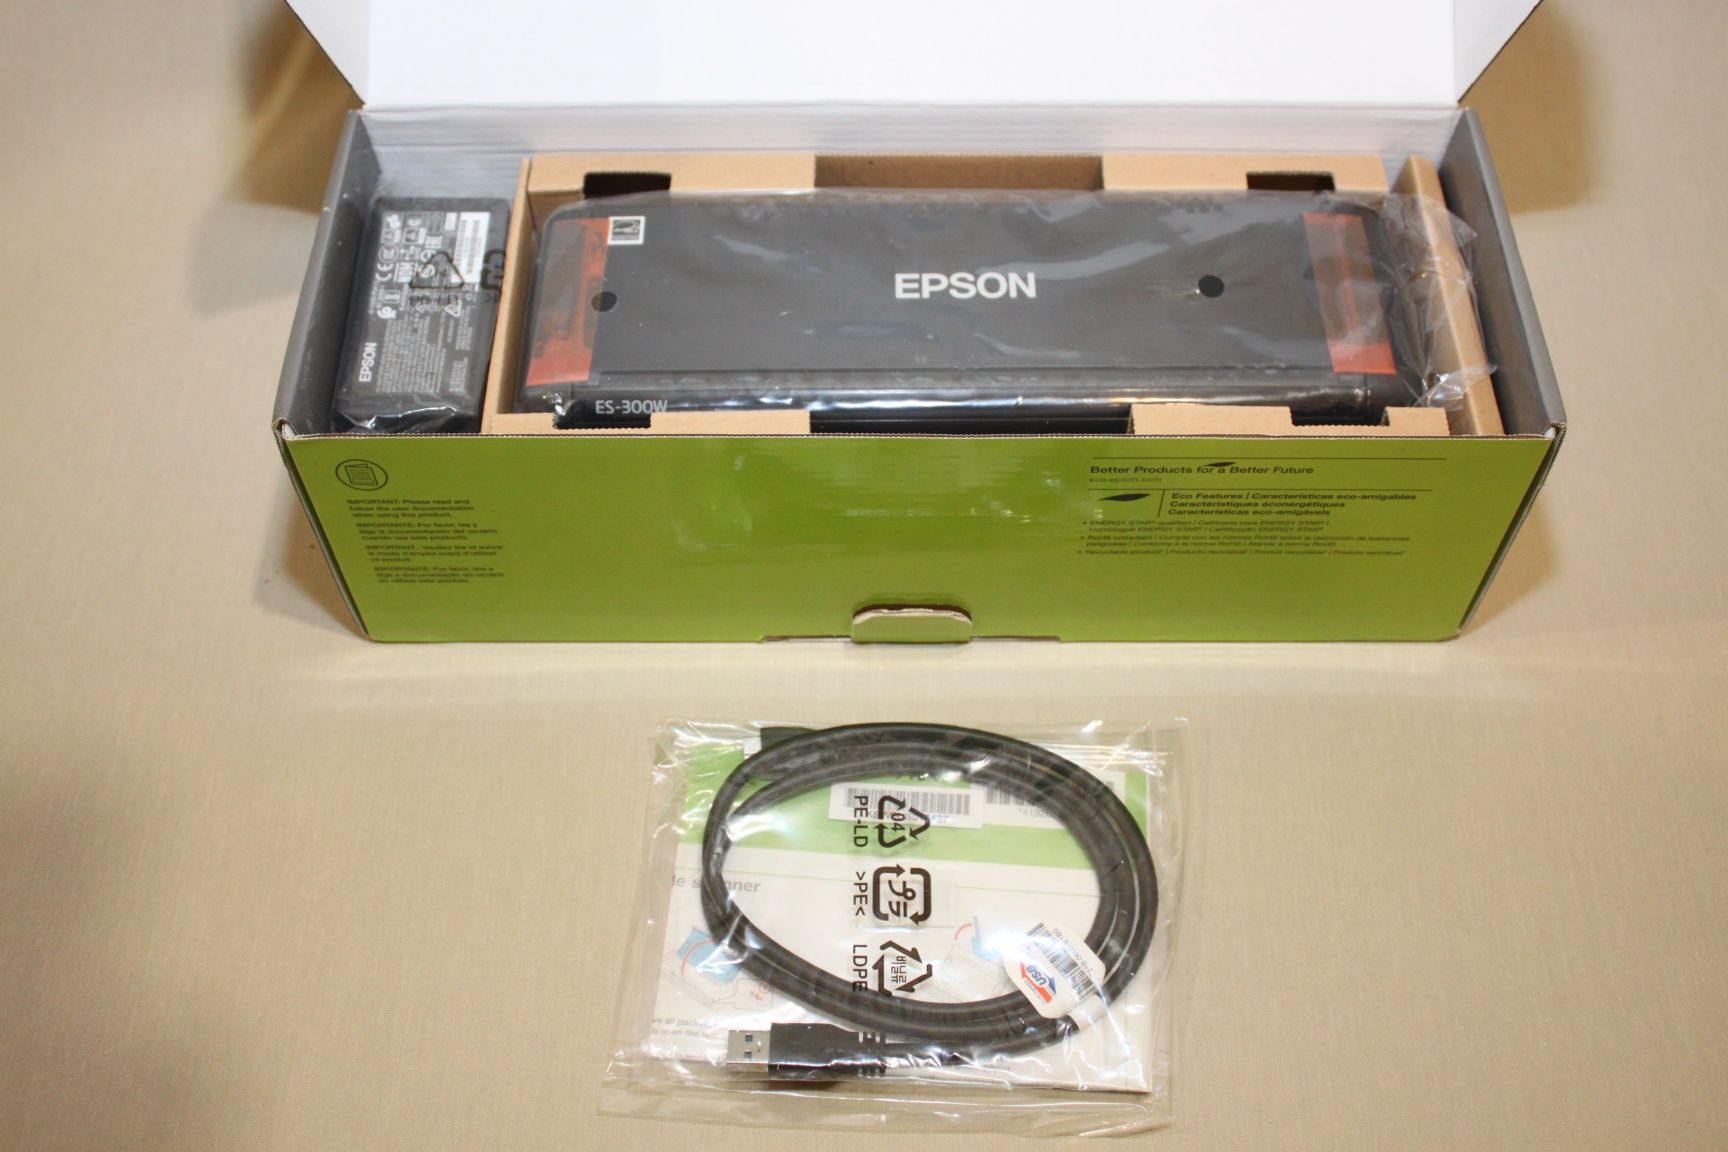 Сканер Epson workforce ES- 300w (25 страниц в минуту с двух сторон)